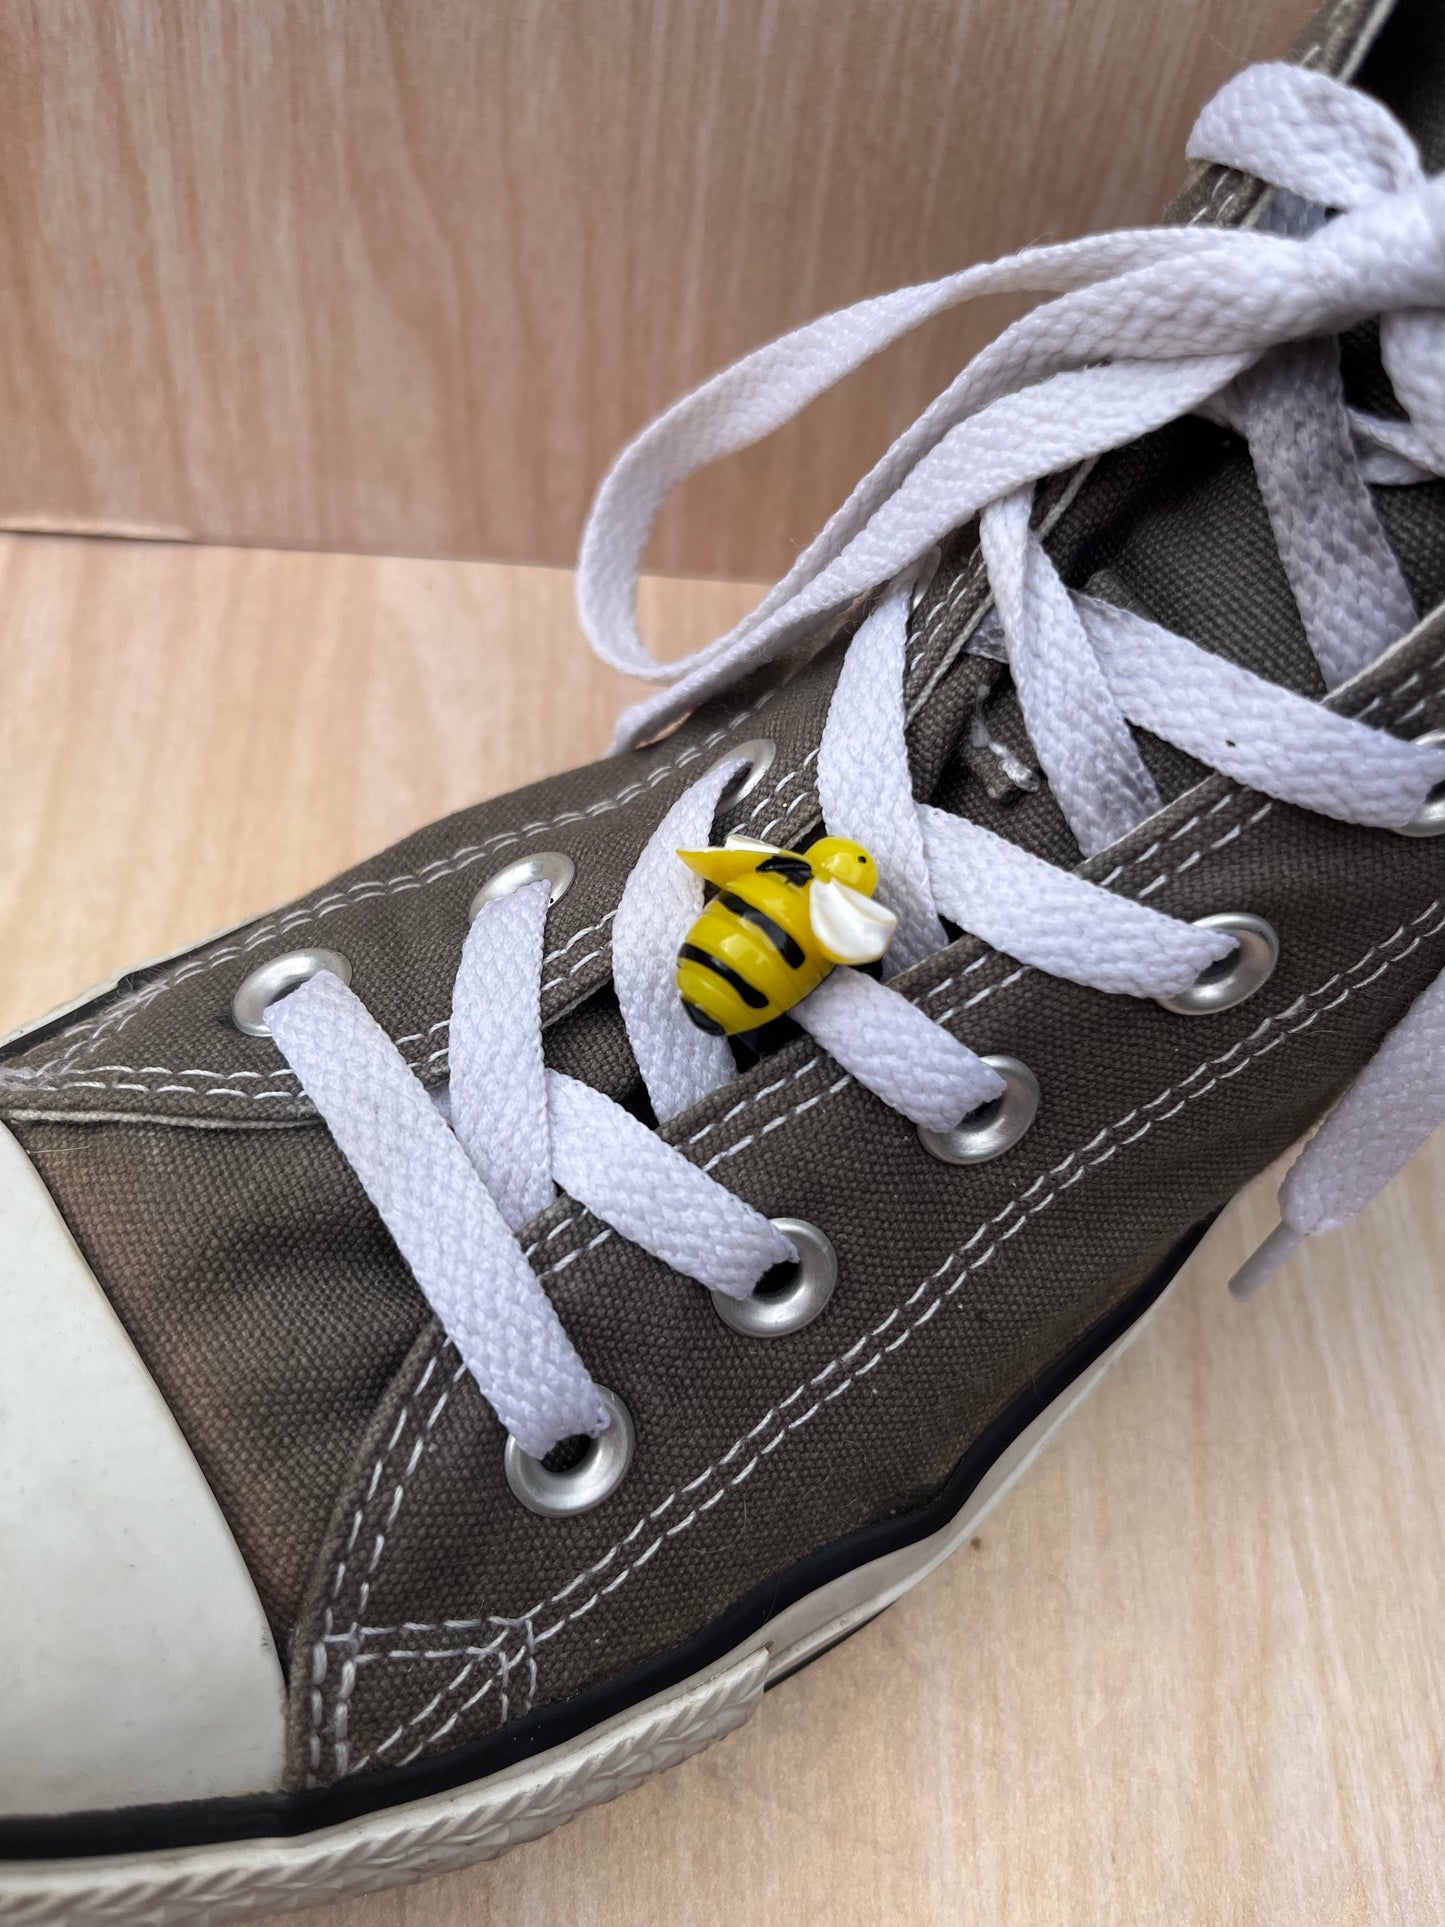 Bee Shoelace charm #2